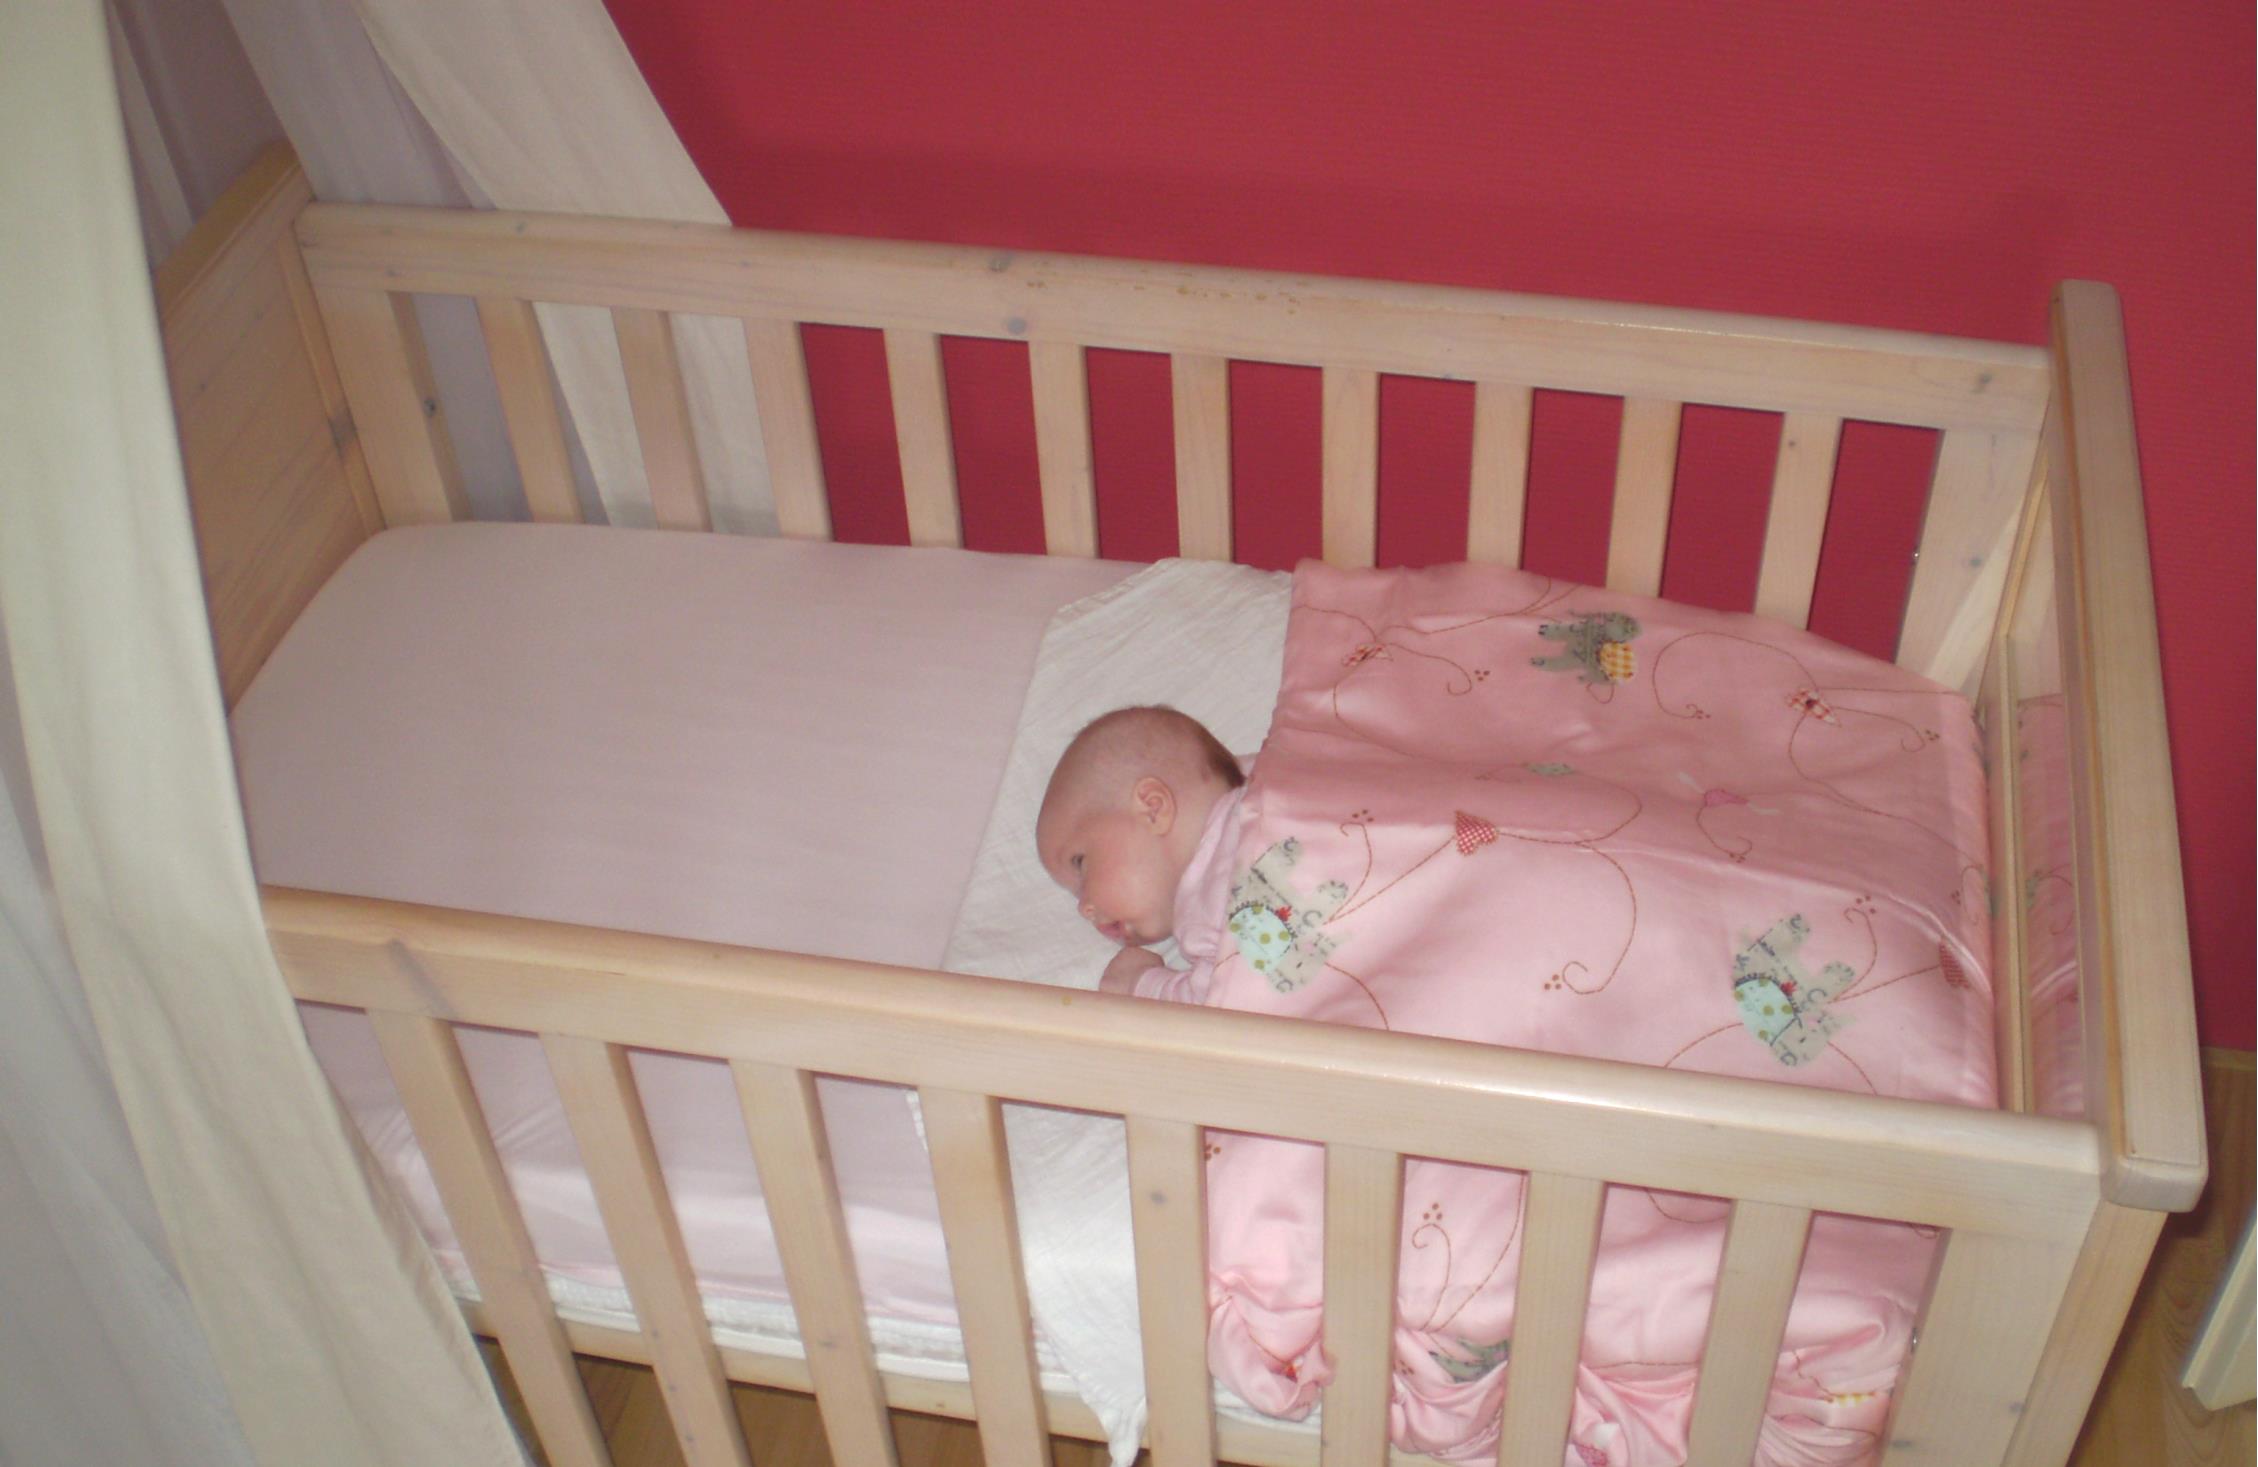 Slaaphouding bij baby met spleet in zachte gehemelte